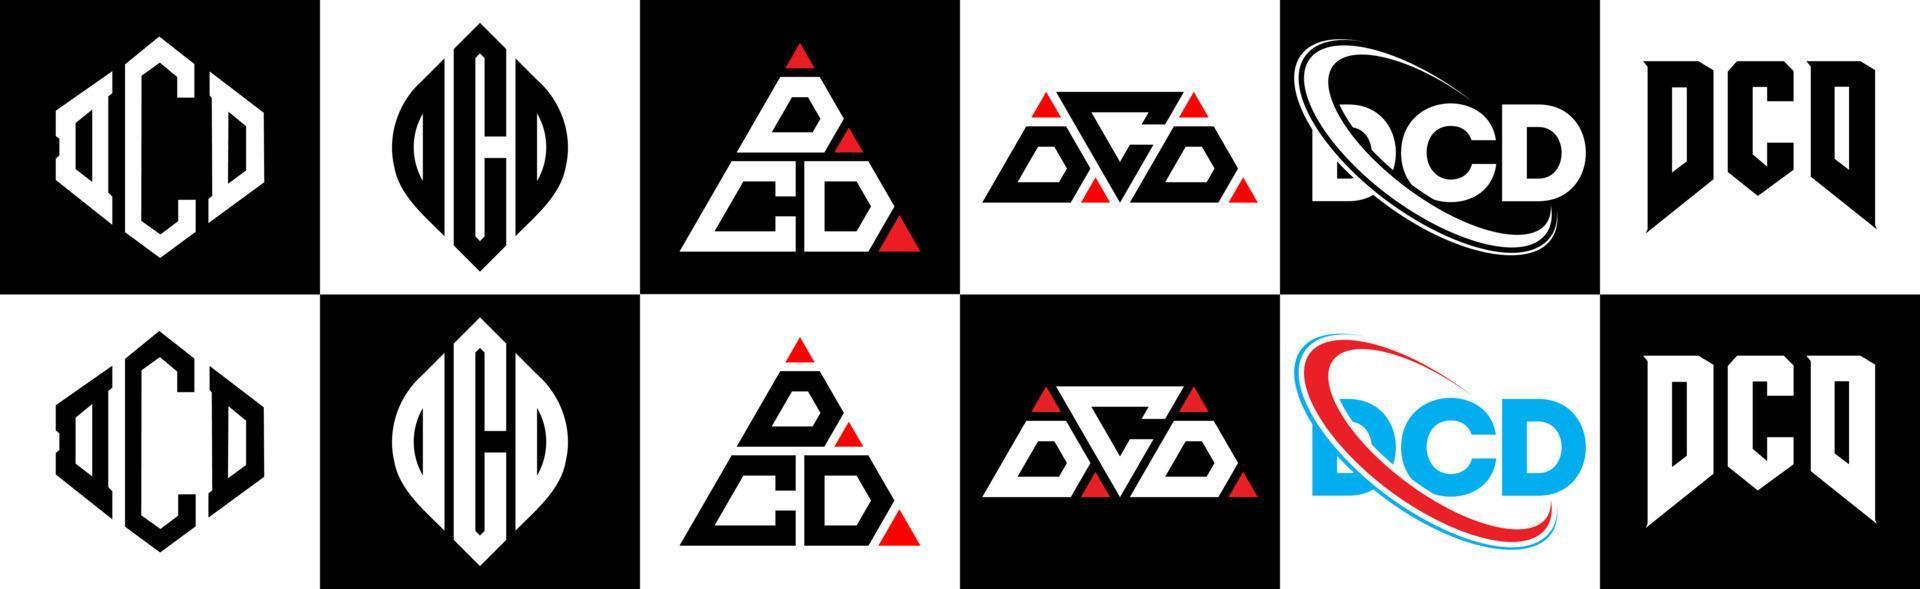 design de logotipo de carta dcd em seis estilo. polígono dcd, círculo, triângulo, hexágono, estilo plano e simples com logotipo de carta de variação de cor preto e branco definido em uma prancheta. dcd logotipo minimalista e clássico vetor